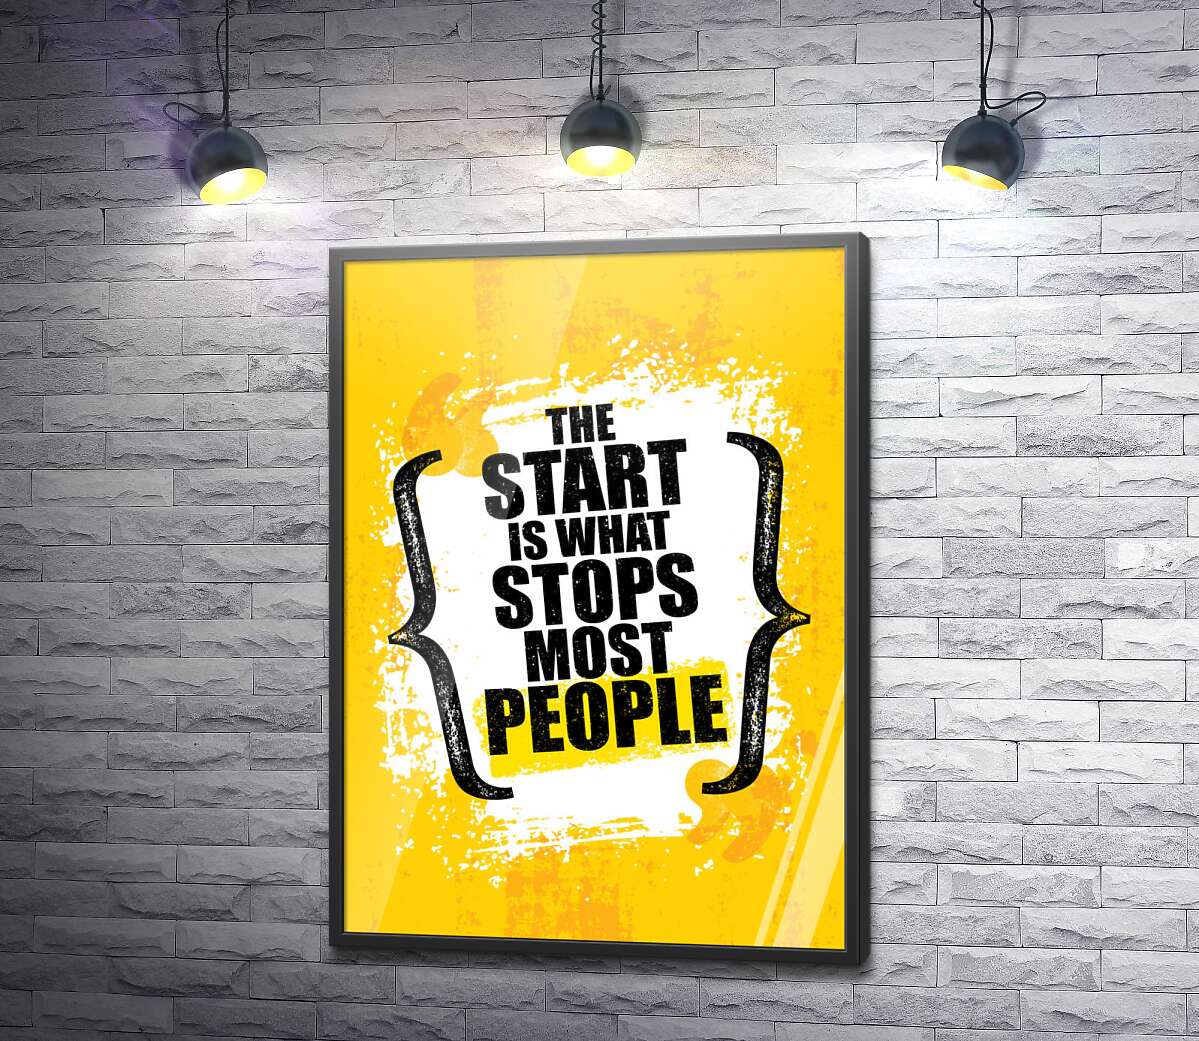 постер Мотивационная фраза: "The Start is What Stops Most People"